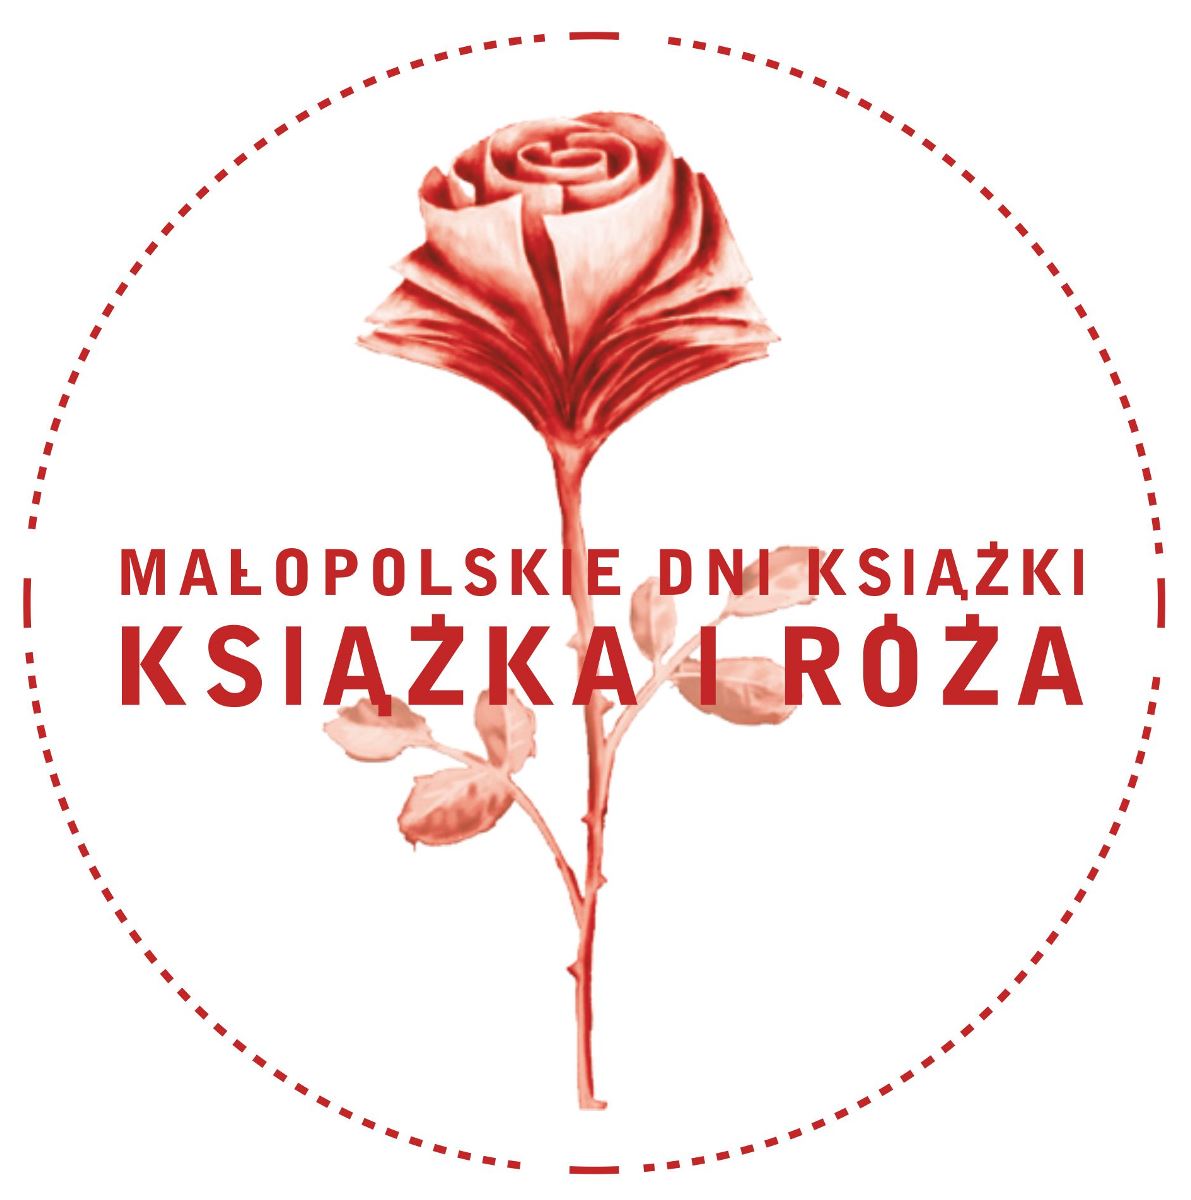 Małopolskie Dni Książki „Książka i Róża” – logo (źródło: materiały prasowe)